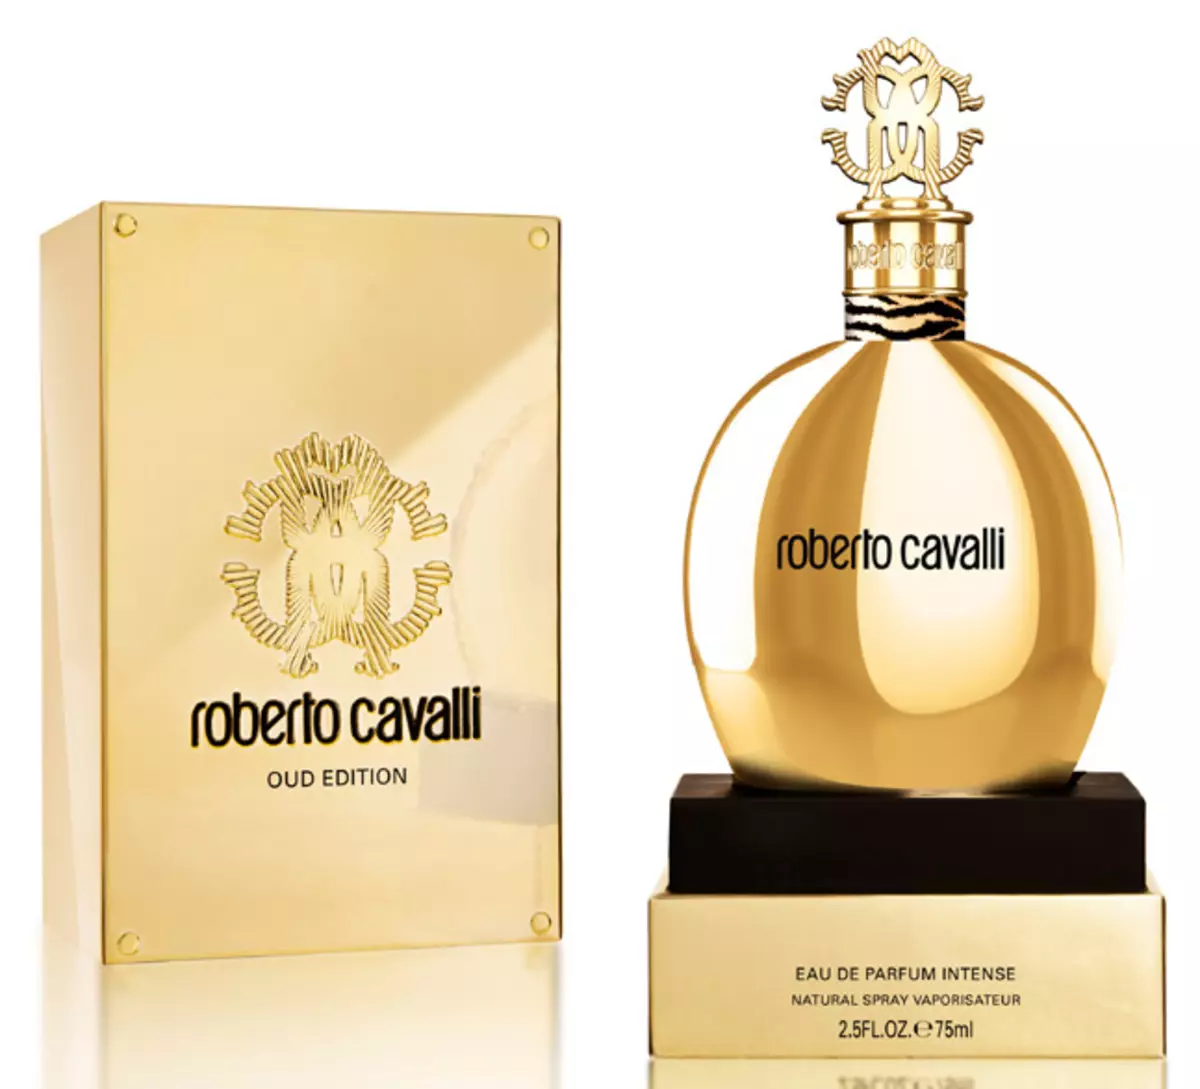 Parfume Roberto Cavalli: Kvinders Parfume, Just Cavalli og andet Toilette Vand, Aromas Roberto Cavalli Eau de Parfum, Paradiso og Acqua 25296_17